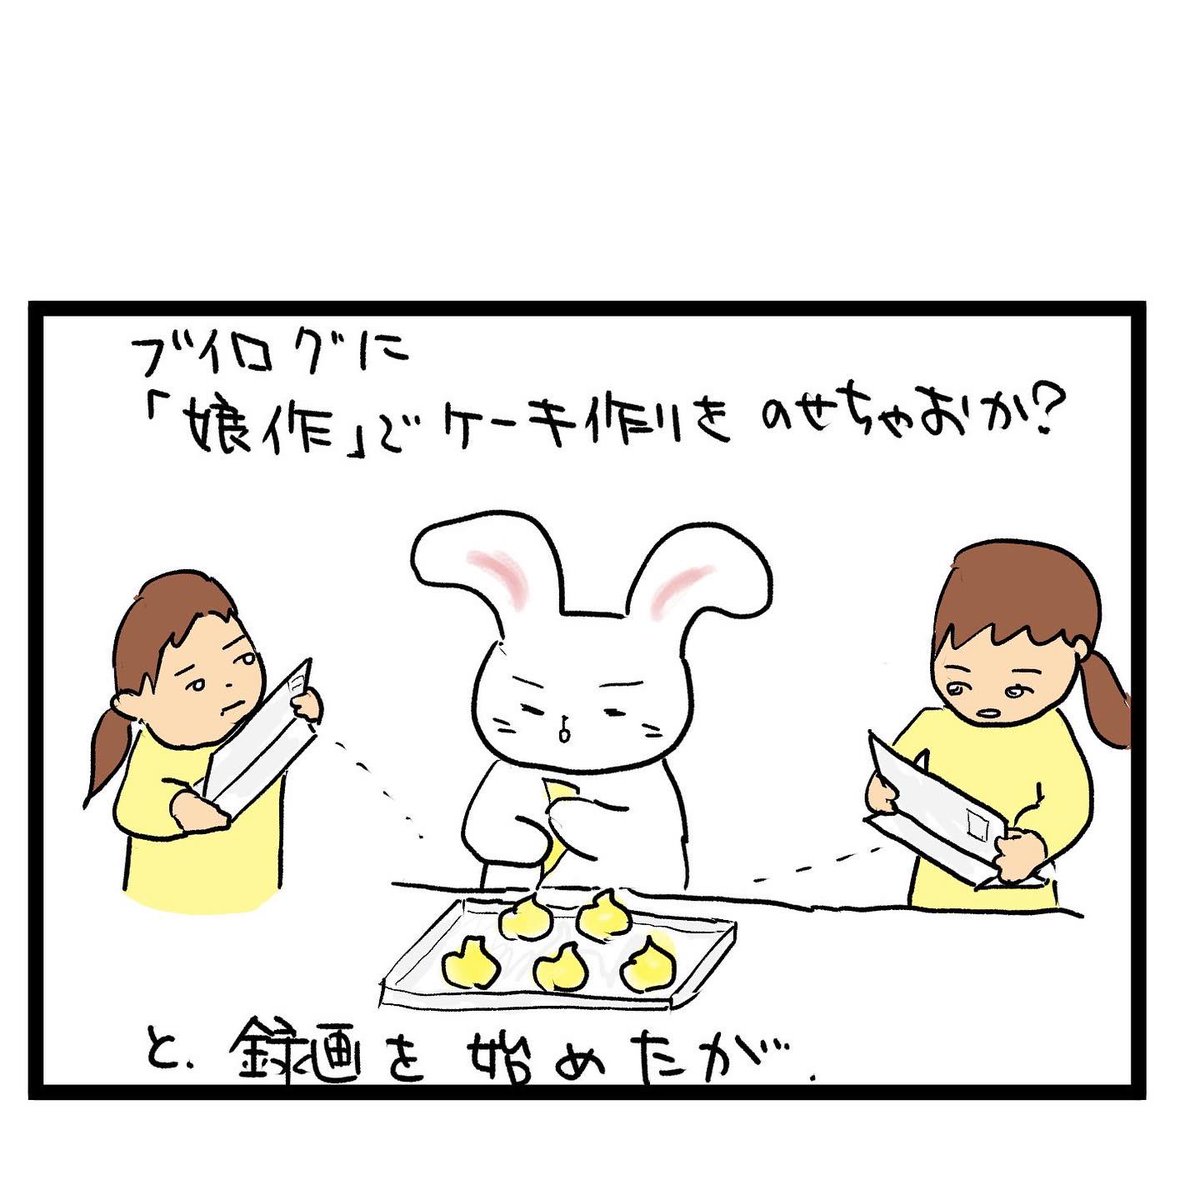 #四コマ漫画
#娘のお菓子作り 